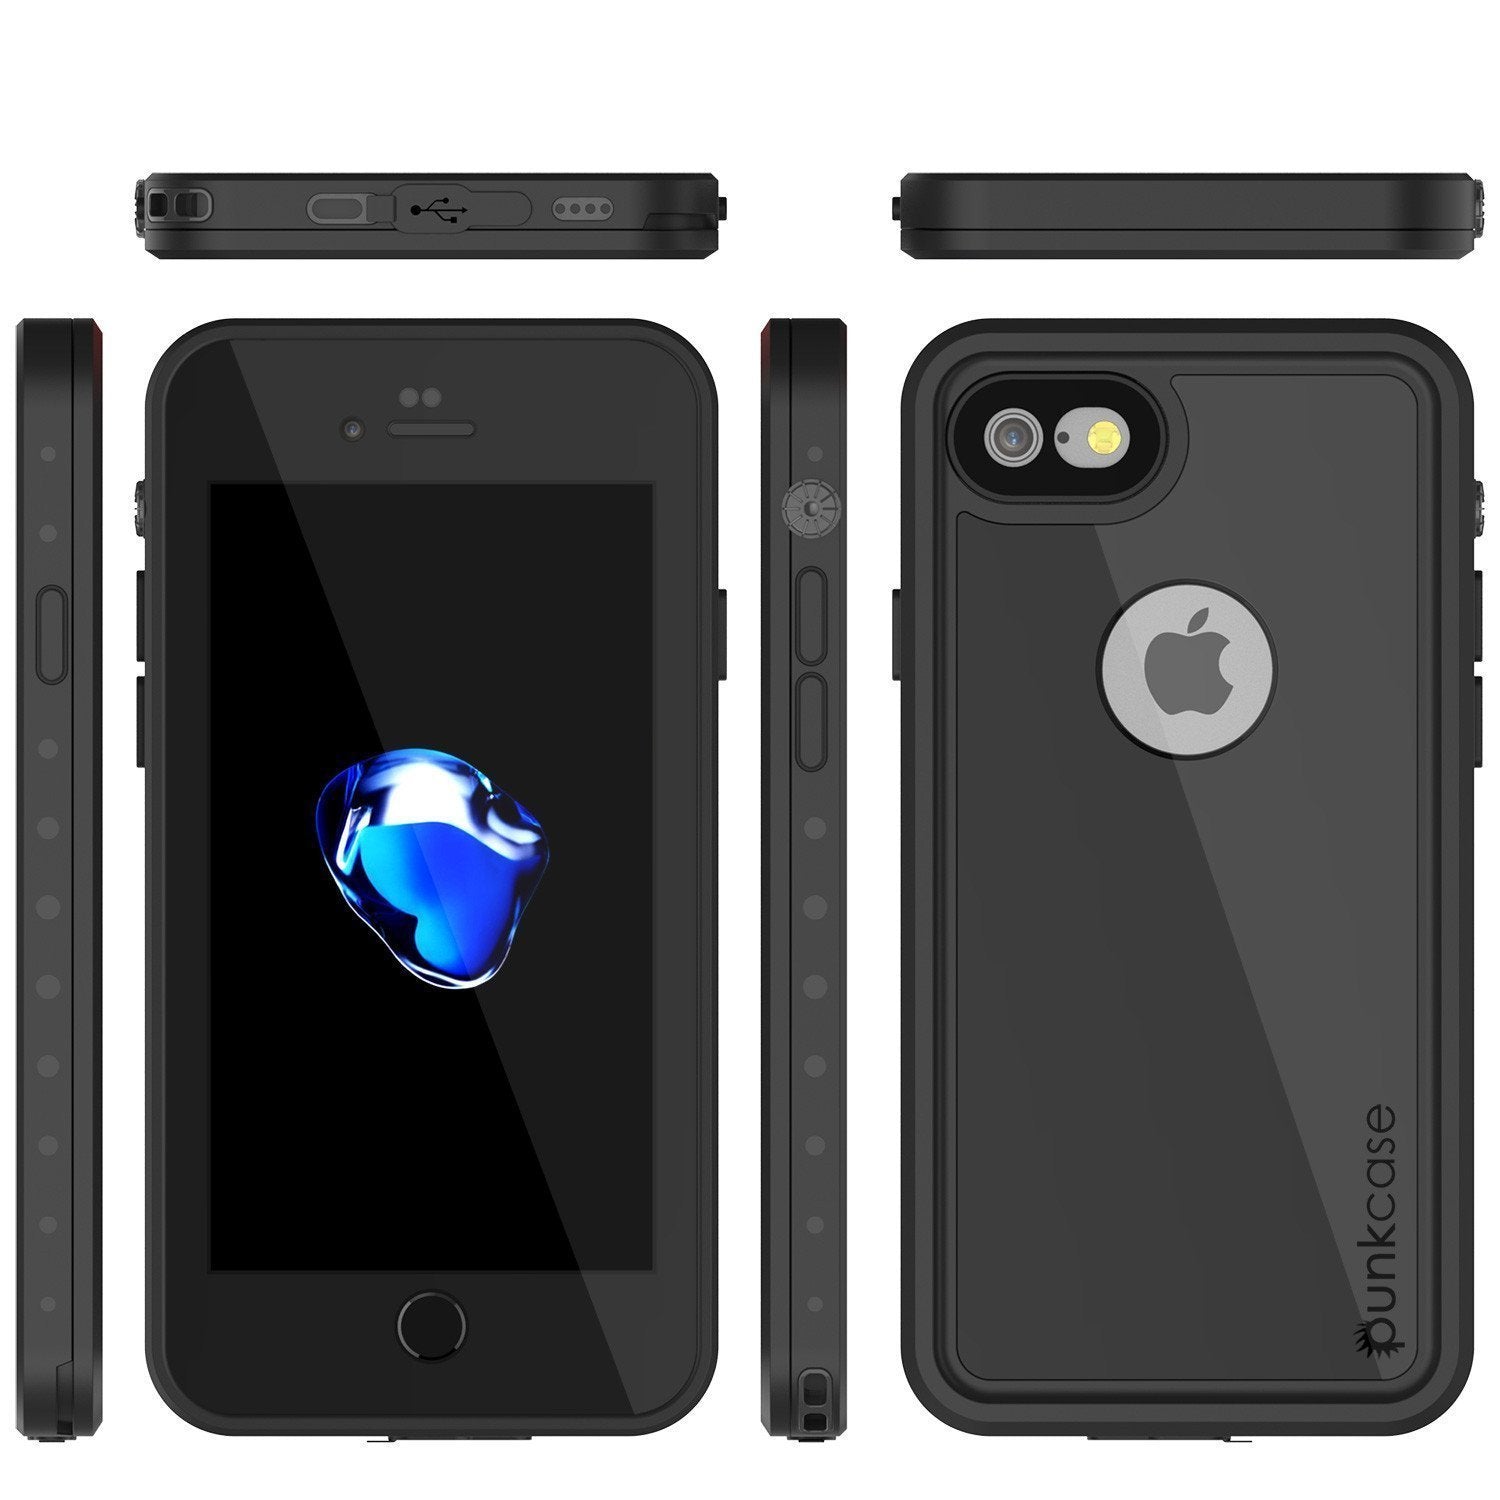 iPhone SE (4.7") Waterproof Case, Punkcase [Black] [StudStar Series] [Slim Fit] [IP68 Certified][Dirtproof] [Snowproof]